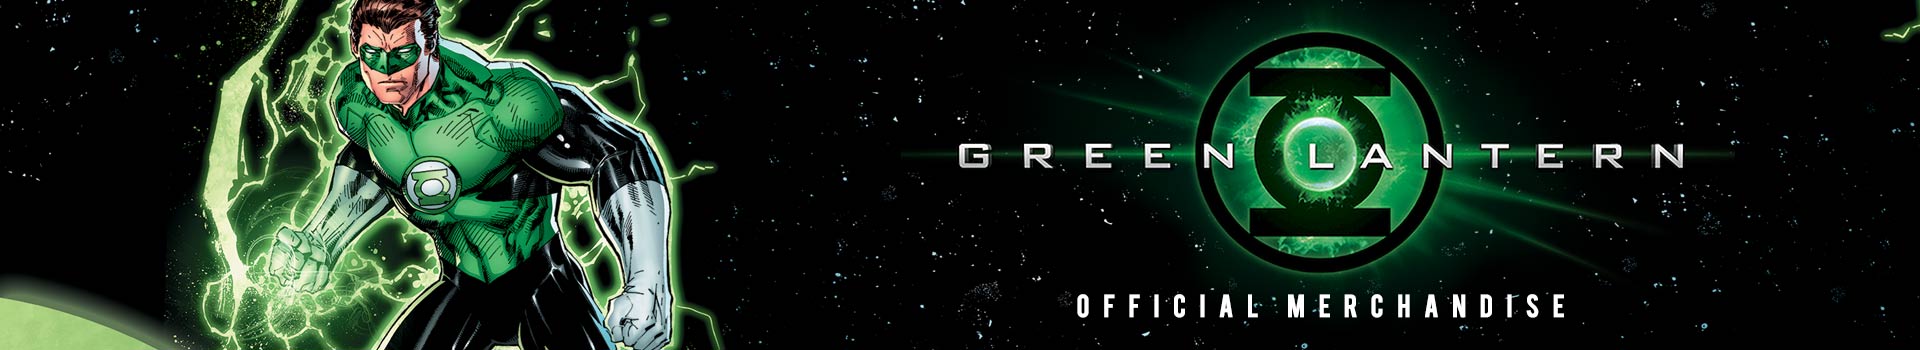 Green Lantern - Official Merchandise